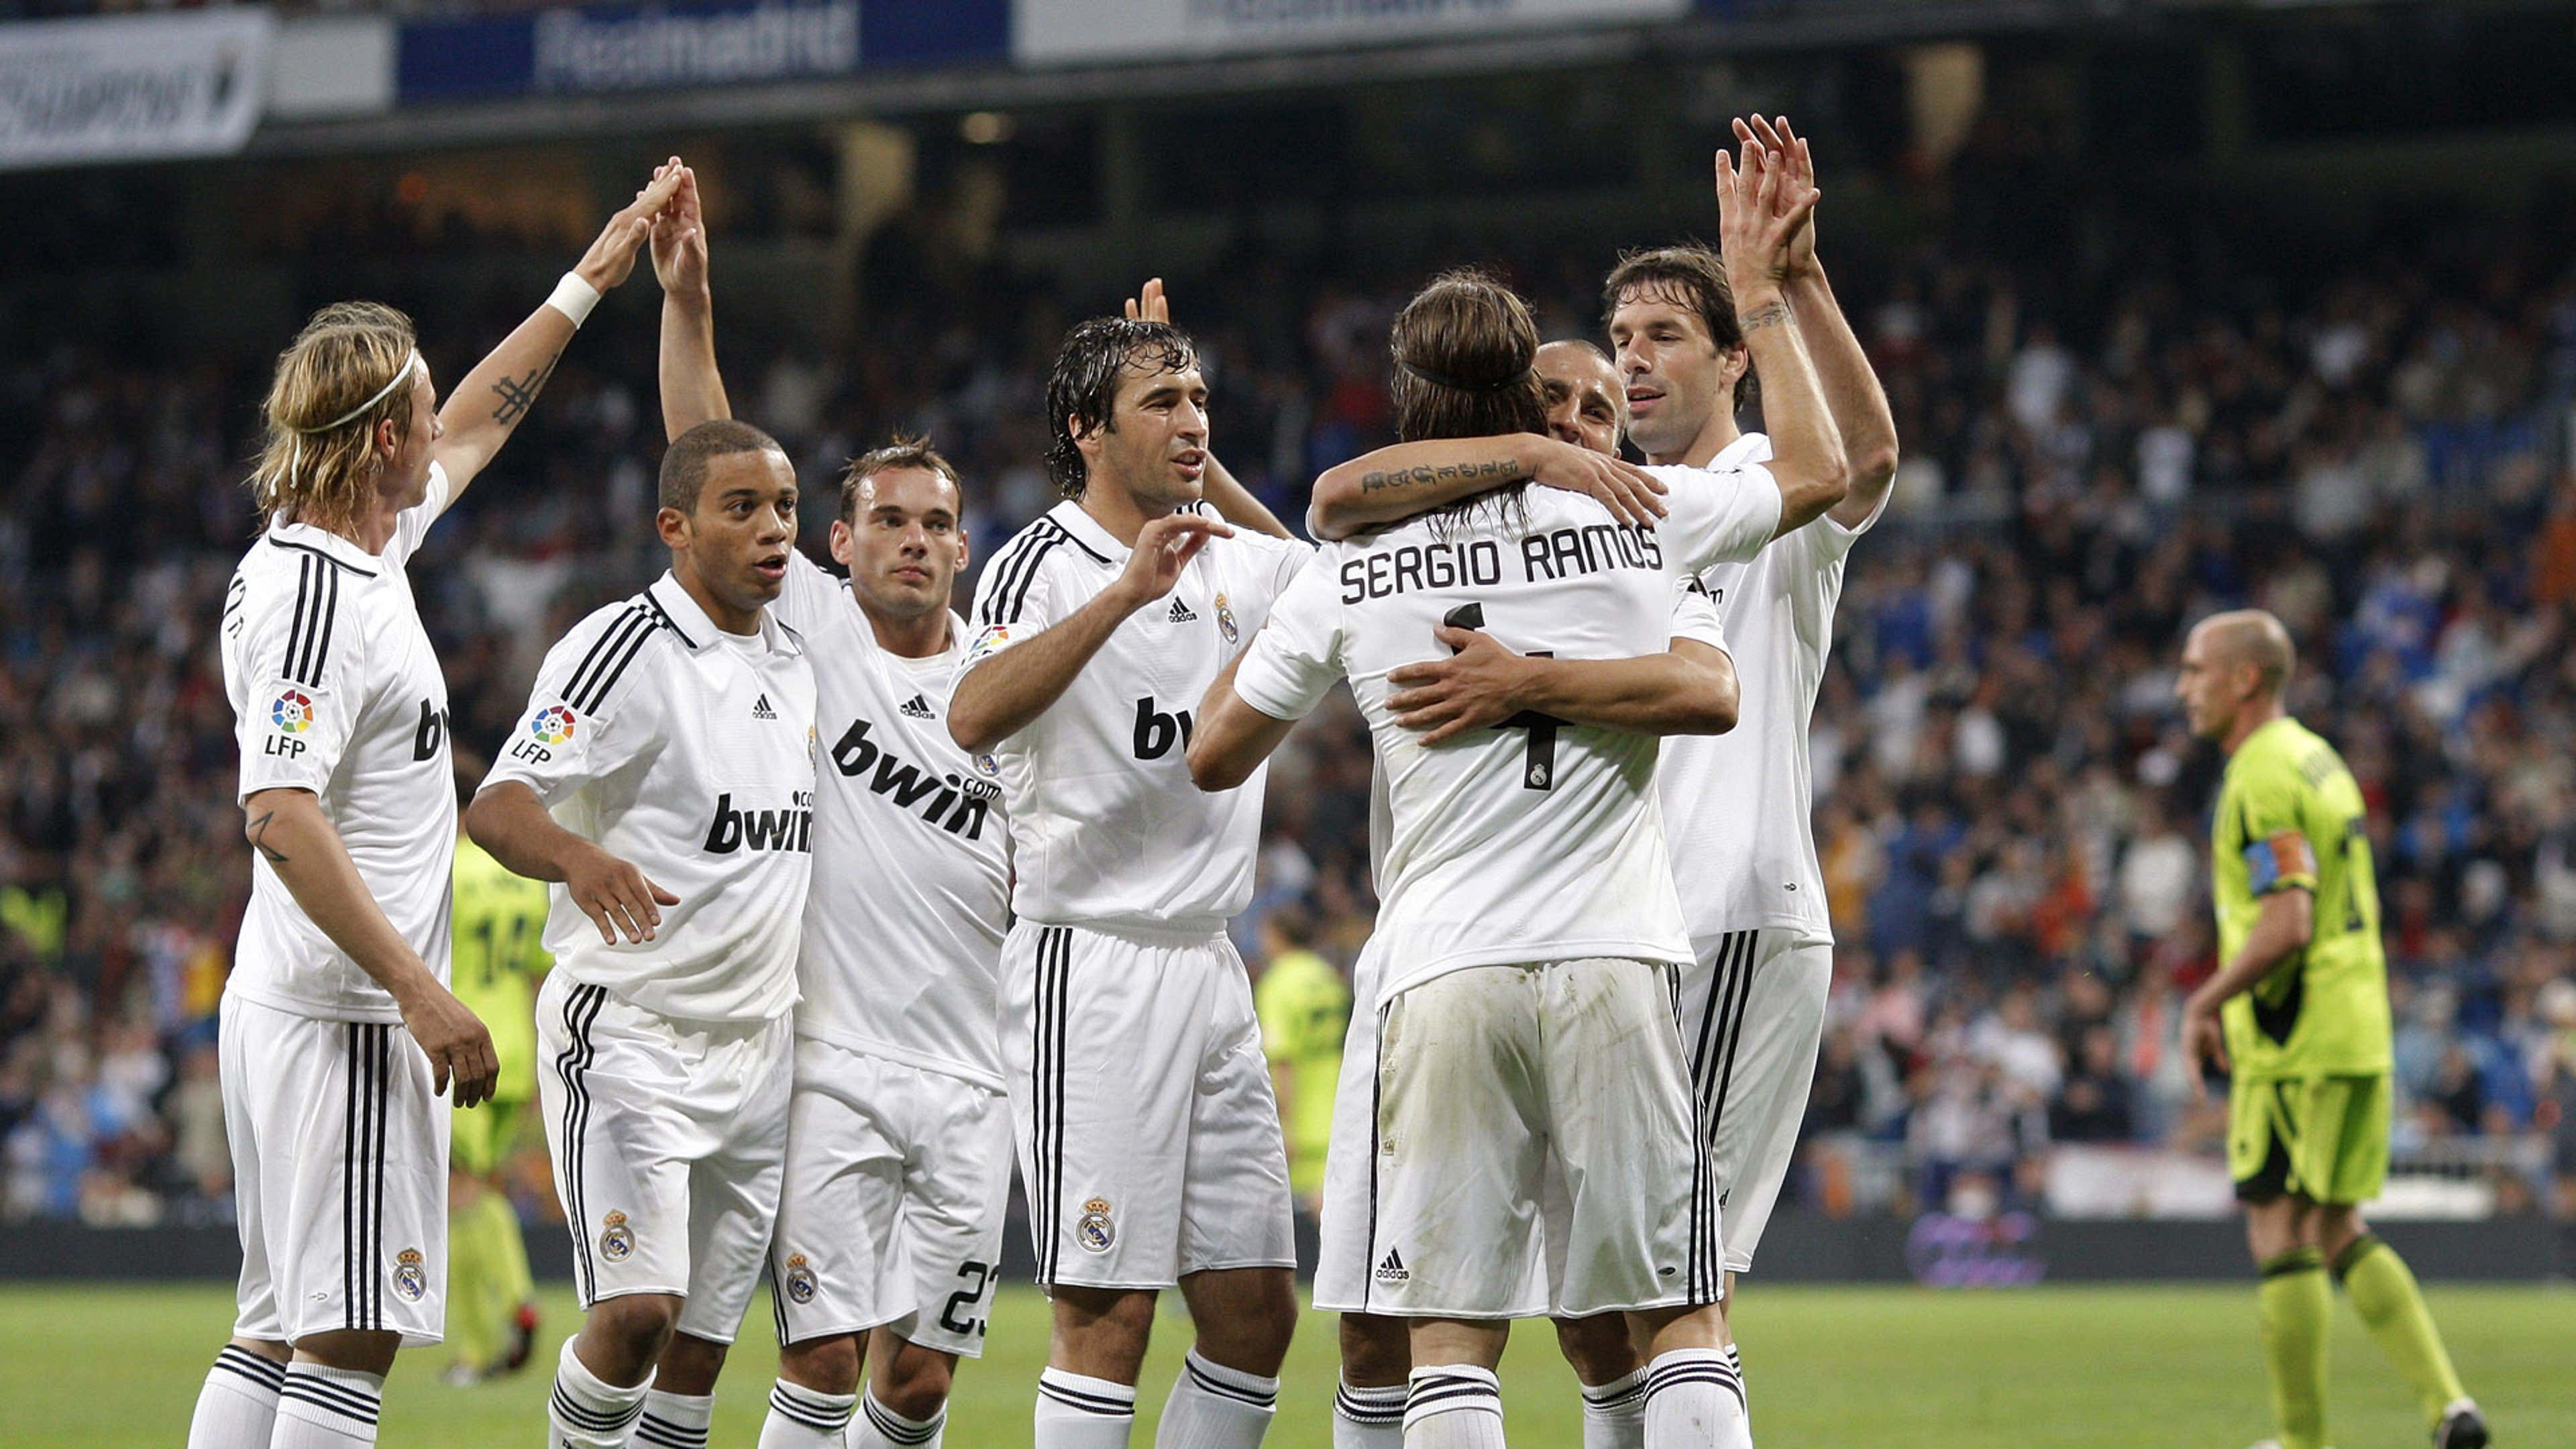 Real Madrid 2008